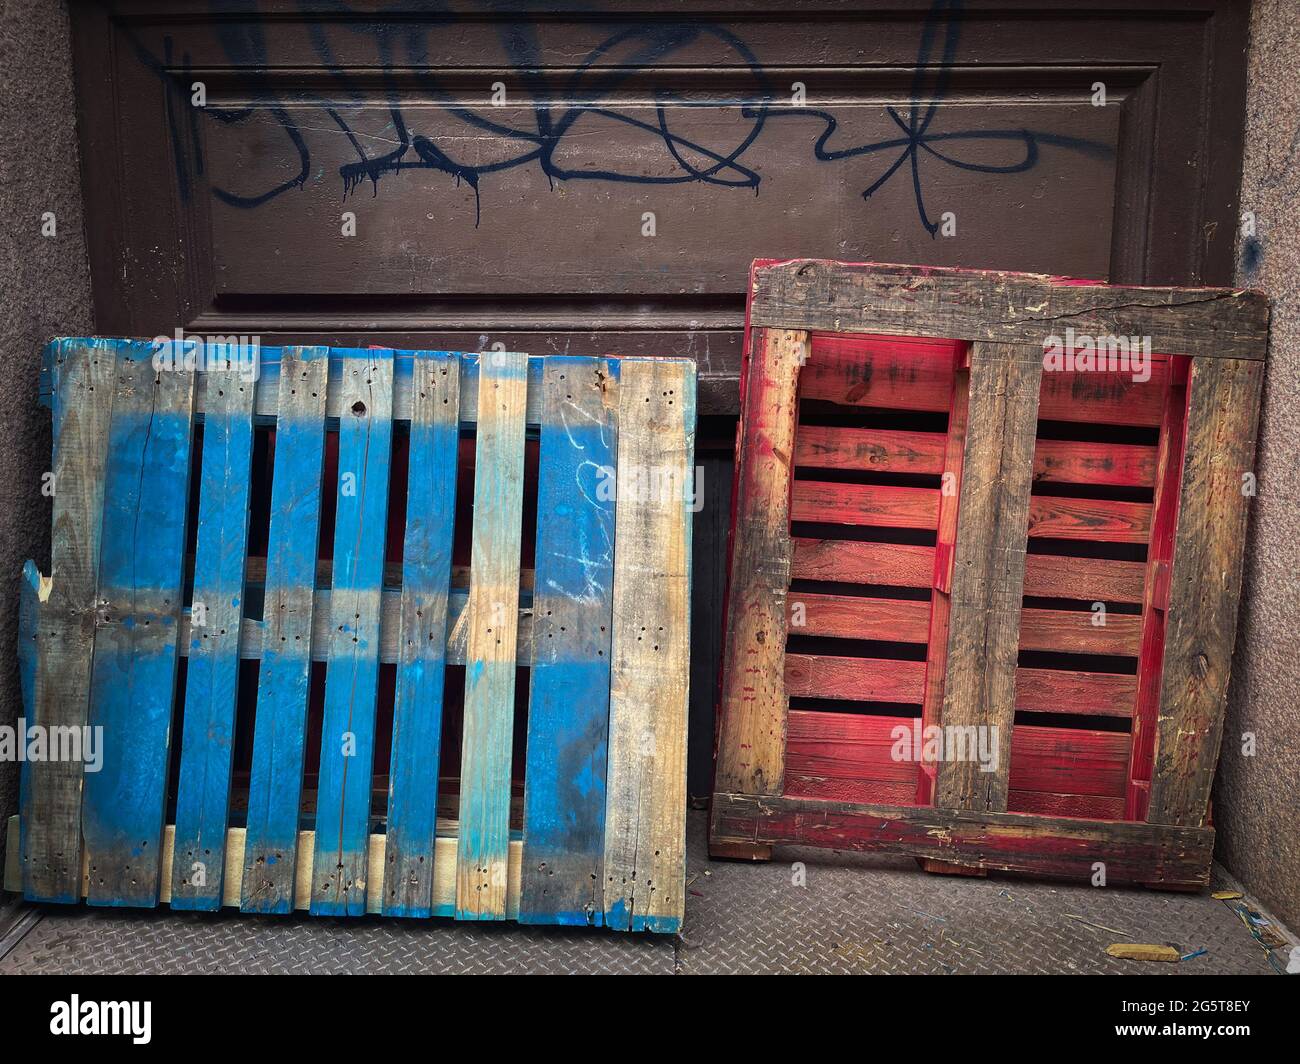 Palettes de bois colorées peintes en bleu et rouge penchées contre une porte de garage en métal avec des graffitis noirs sur la nit Banque D'Images